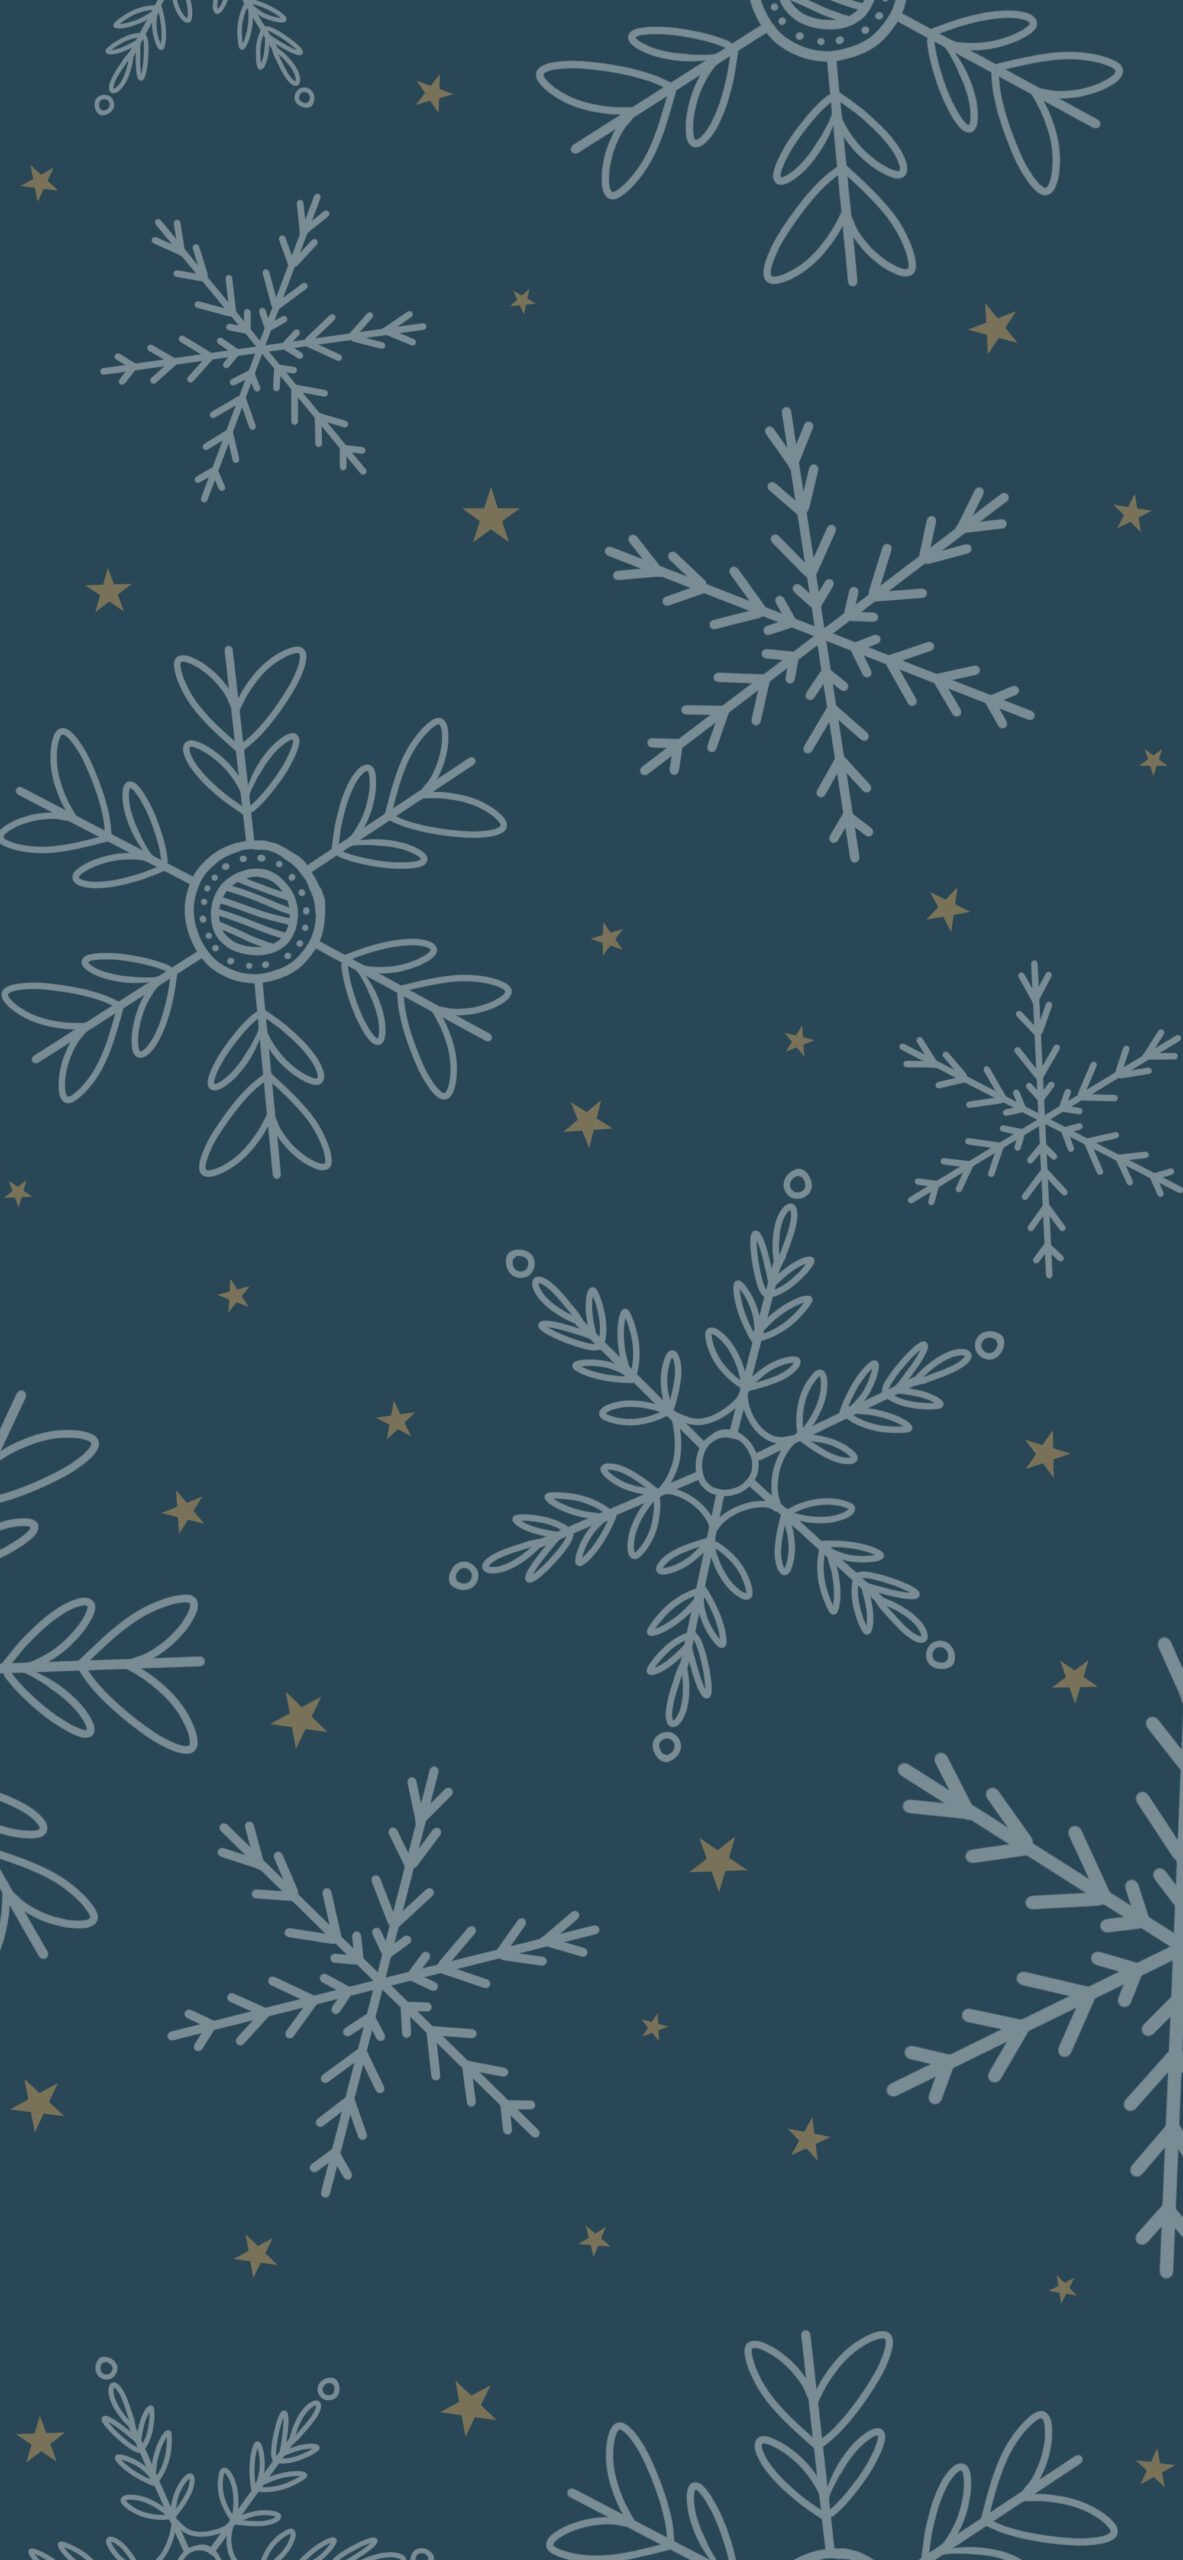 winter snowflakes dark blue background